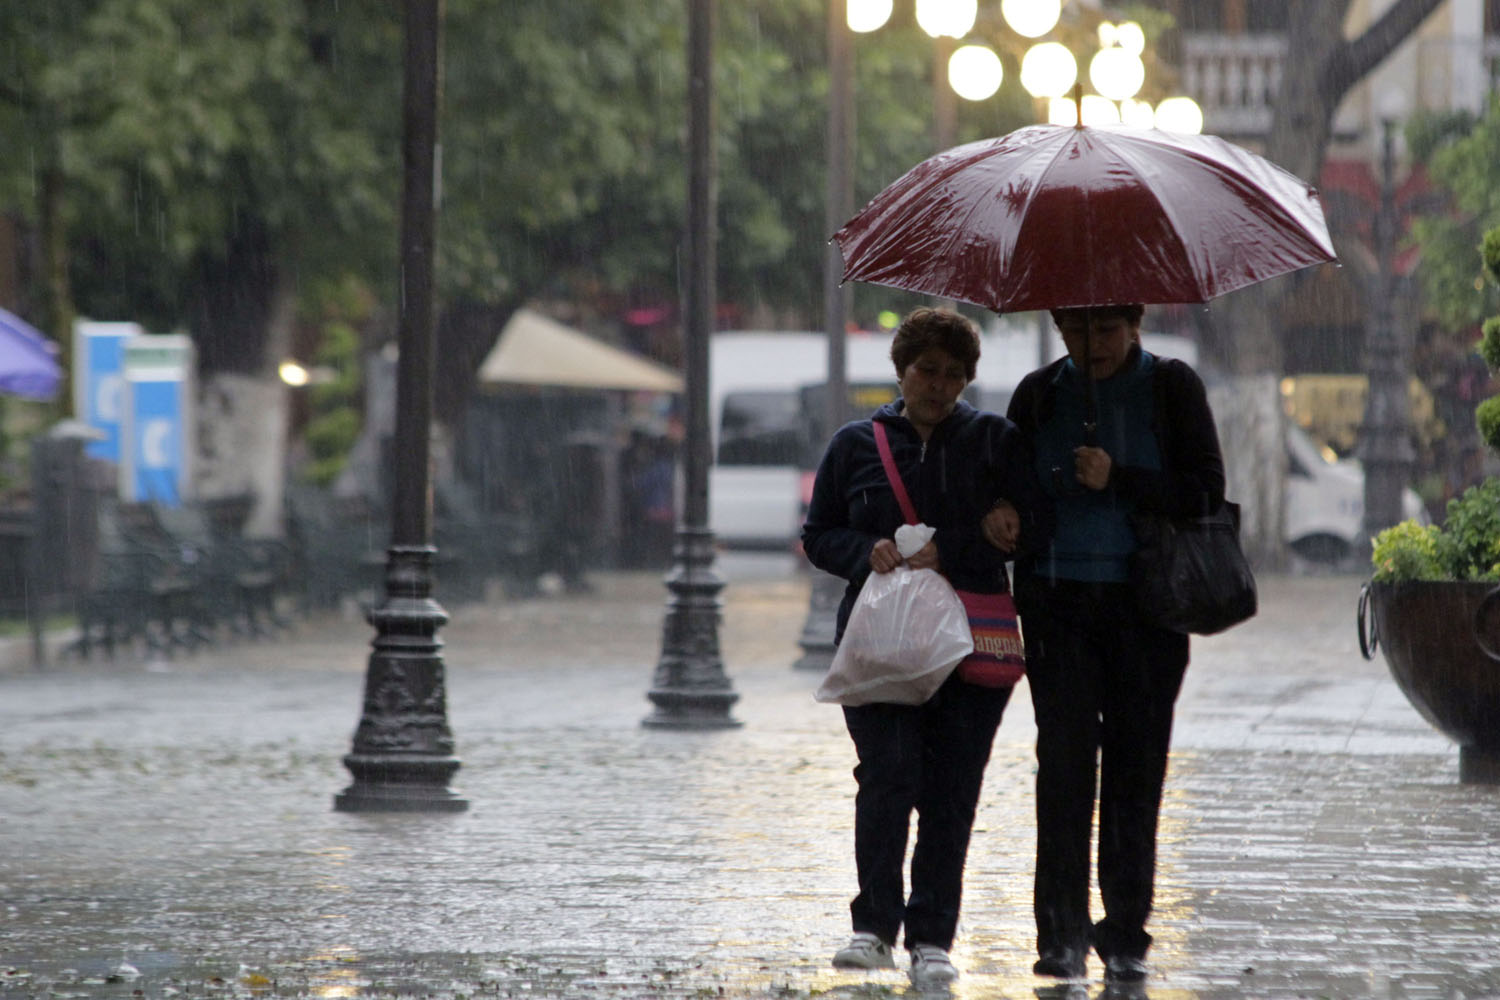  Veracruz, Oaxaca y Chiapas, lluvias fuertes este fin de semana